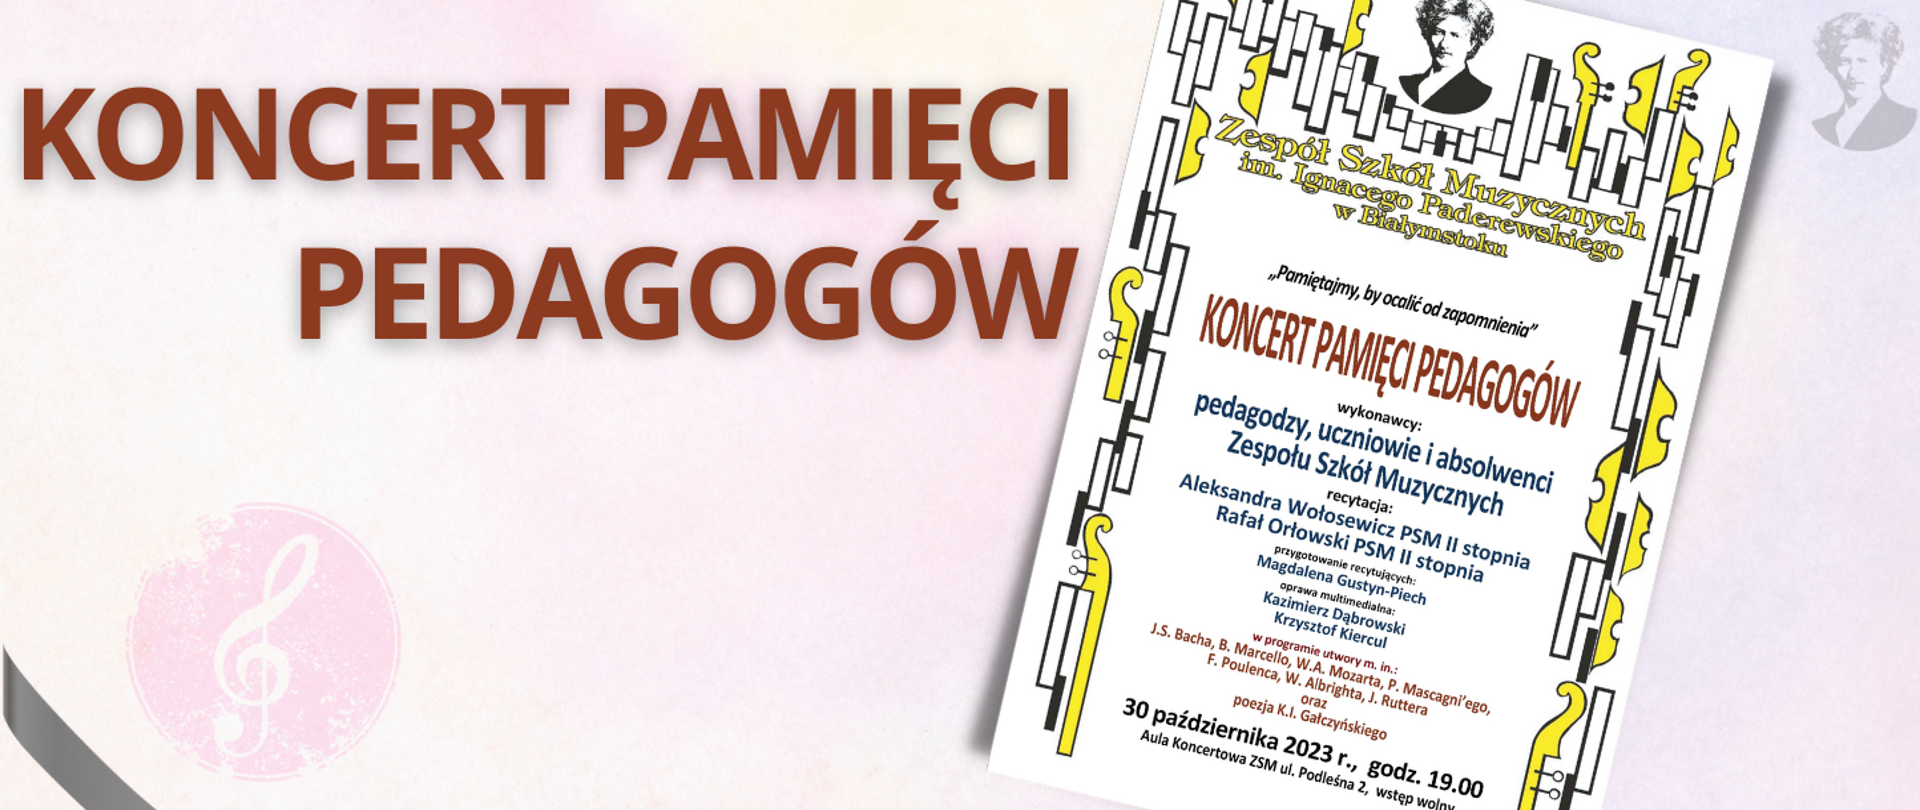 Na jasno-różowym tle brązowy napis "Koncert pamięci pedagogów". Po prawej stronie miniatura plakatu oraz podobizna Ignacego Paderewskiego. W lewym dolnym rogu czarna wstążka.